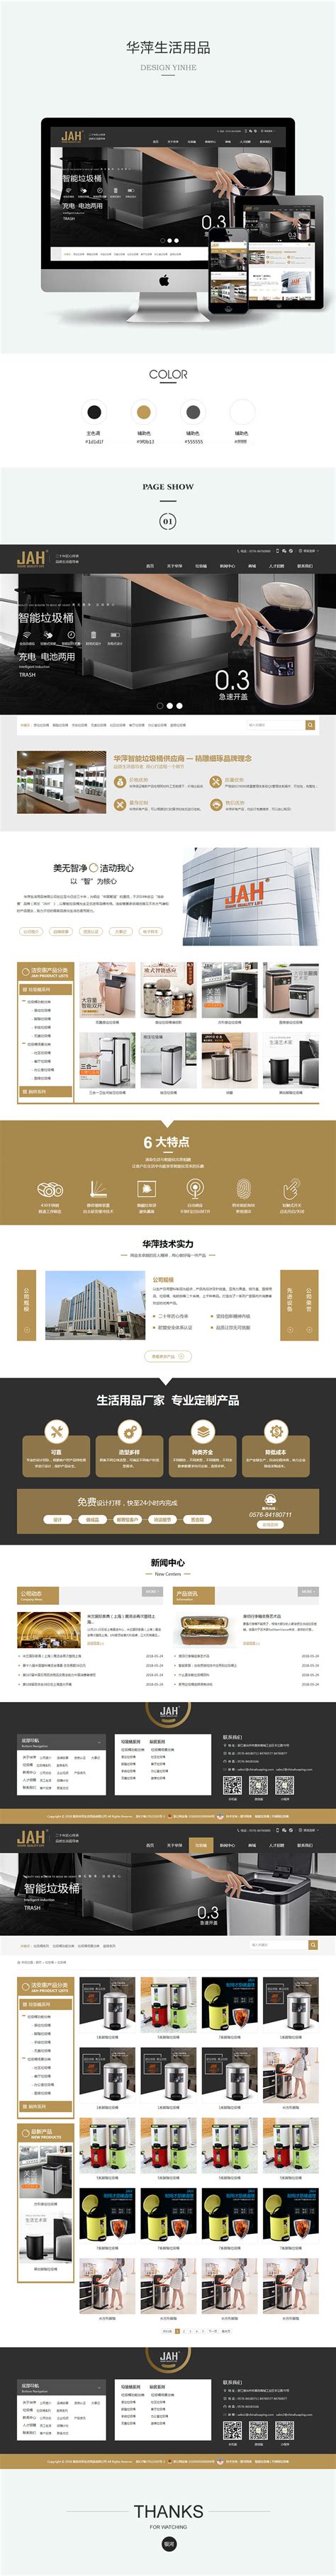 台州市黄岩华萍生活用品有限公司官网网站设计